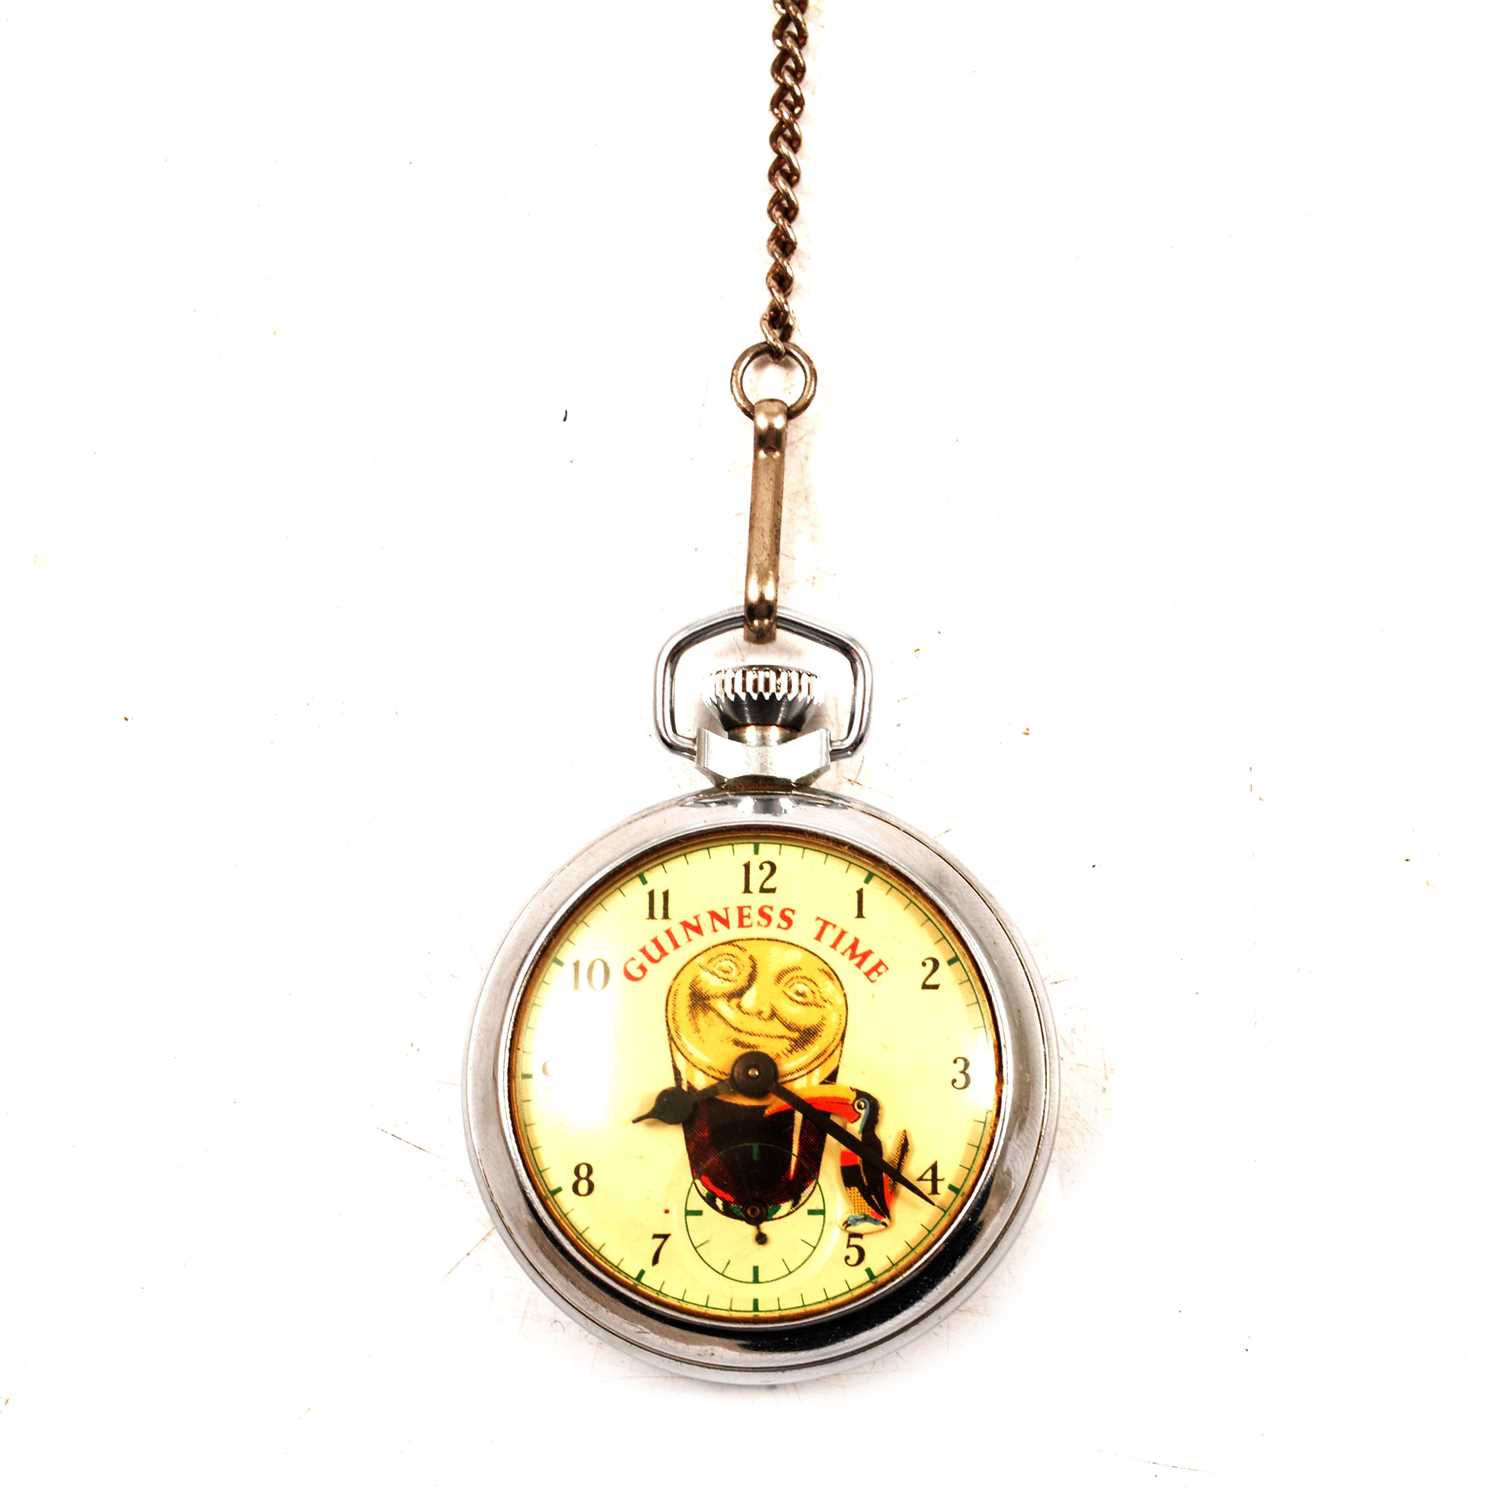 Lot 308 - A Guinness Time novelty pocket watch.